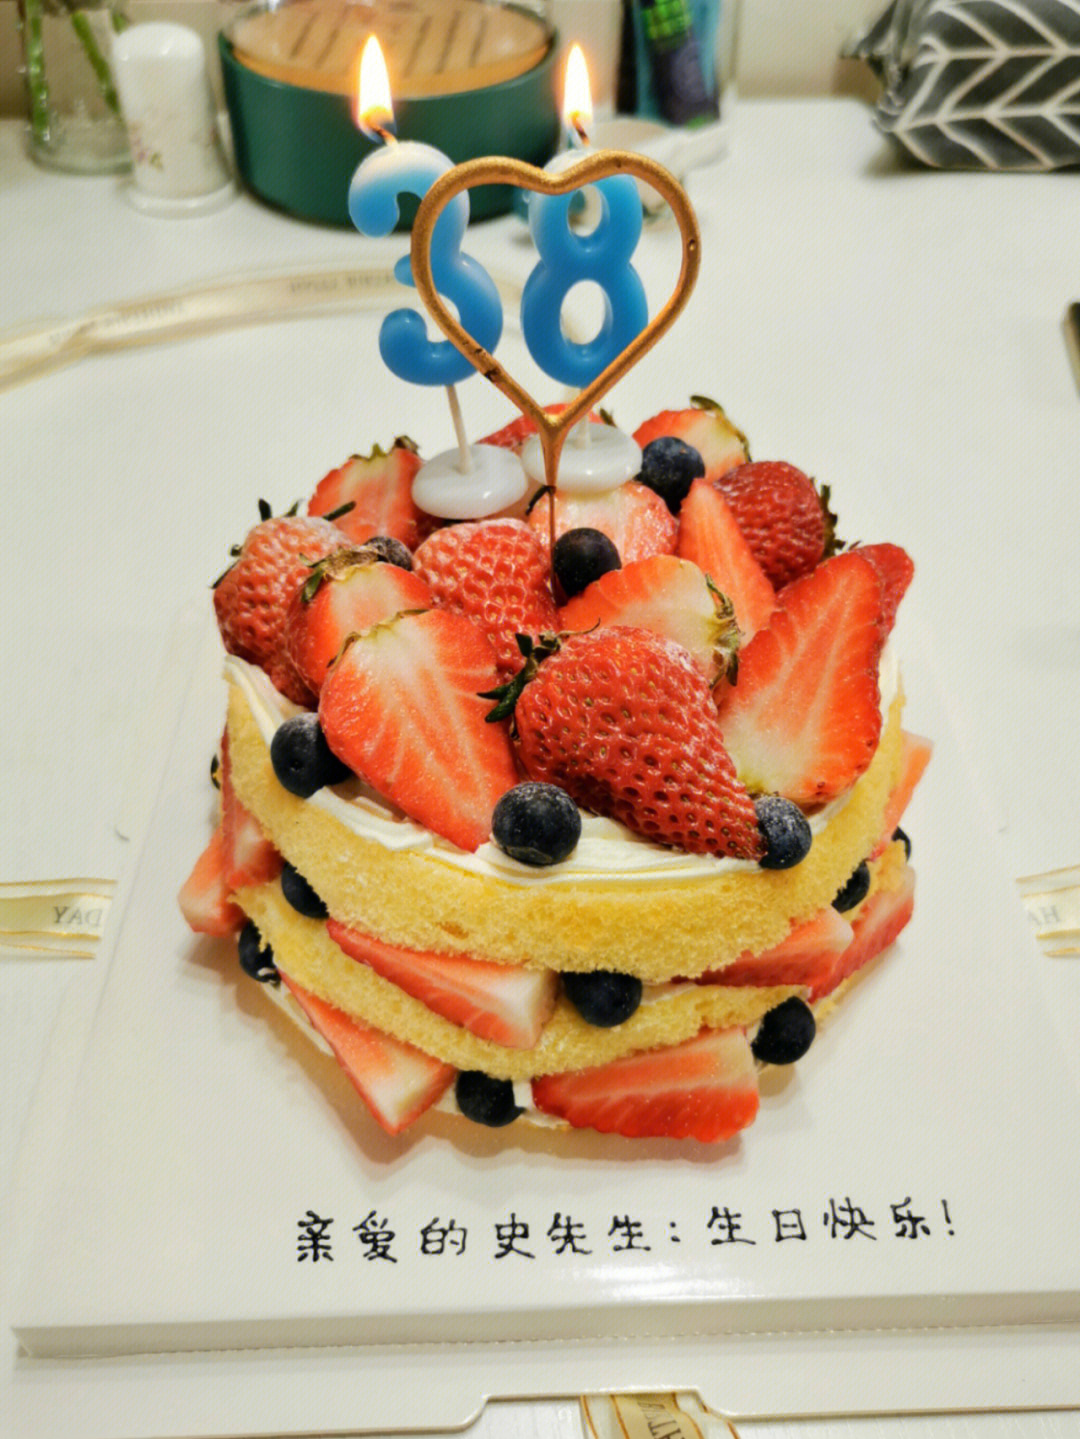 数字38岁生日蛋糕图片